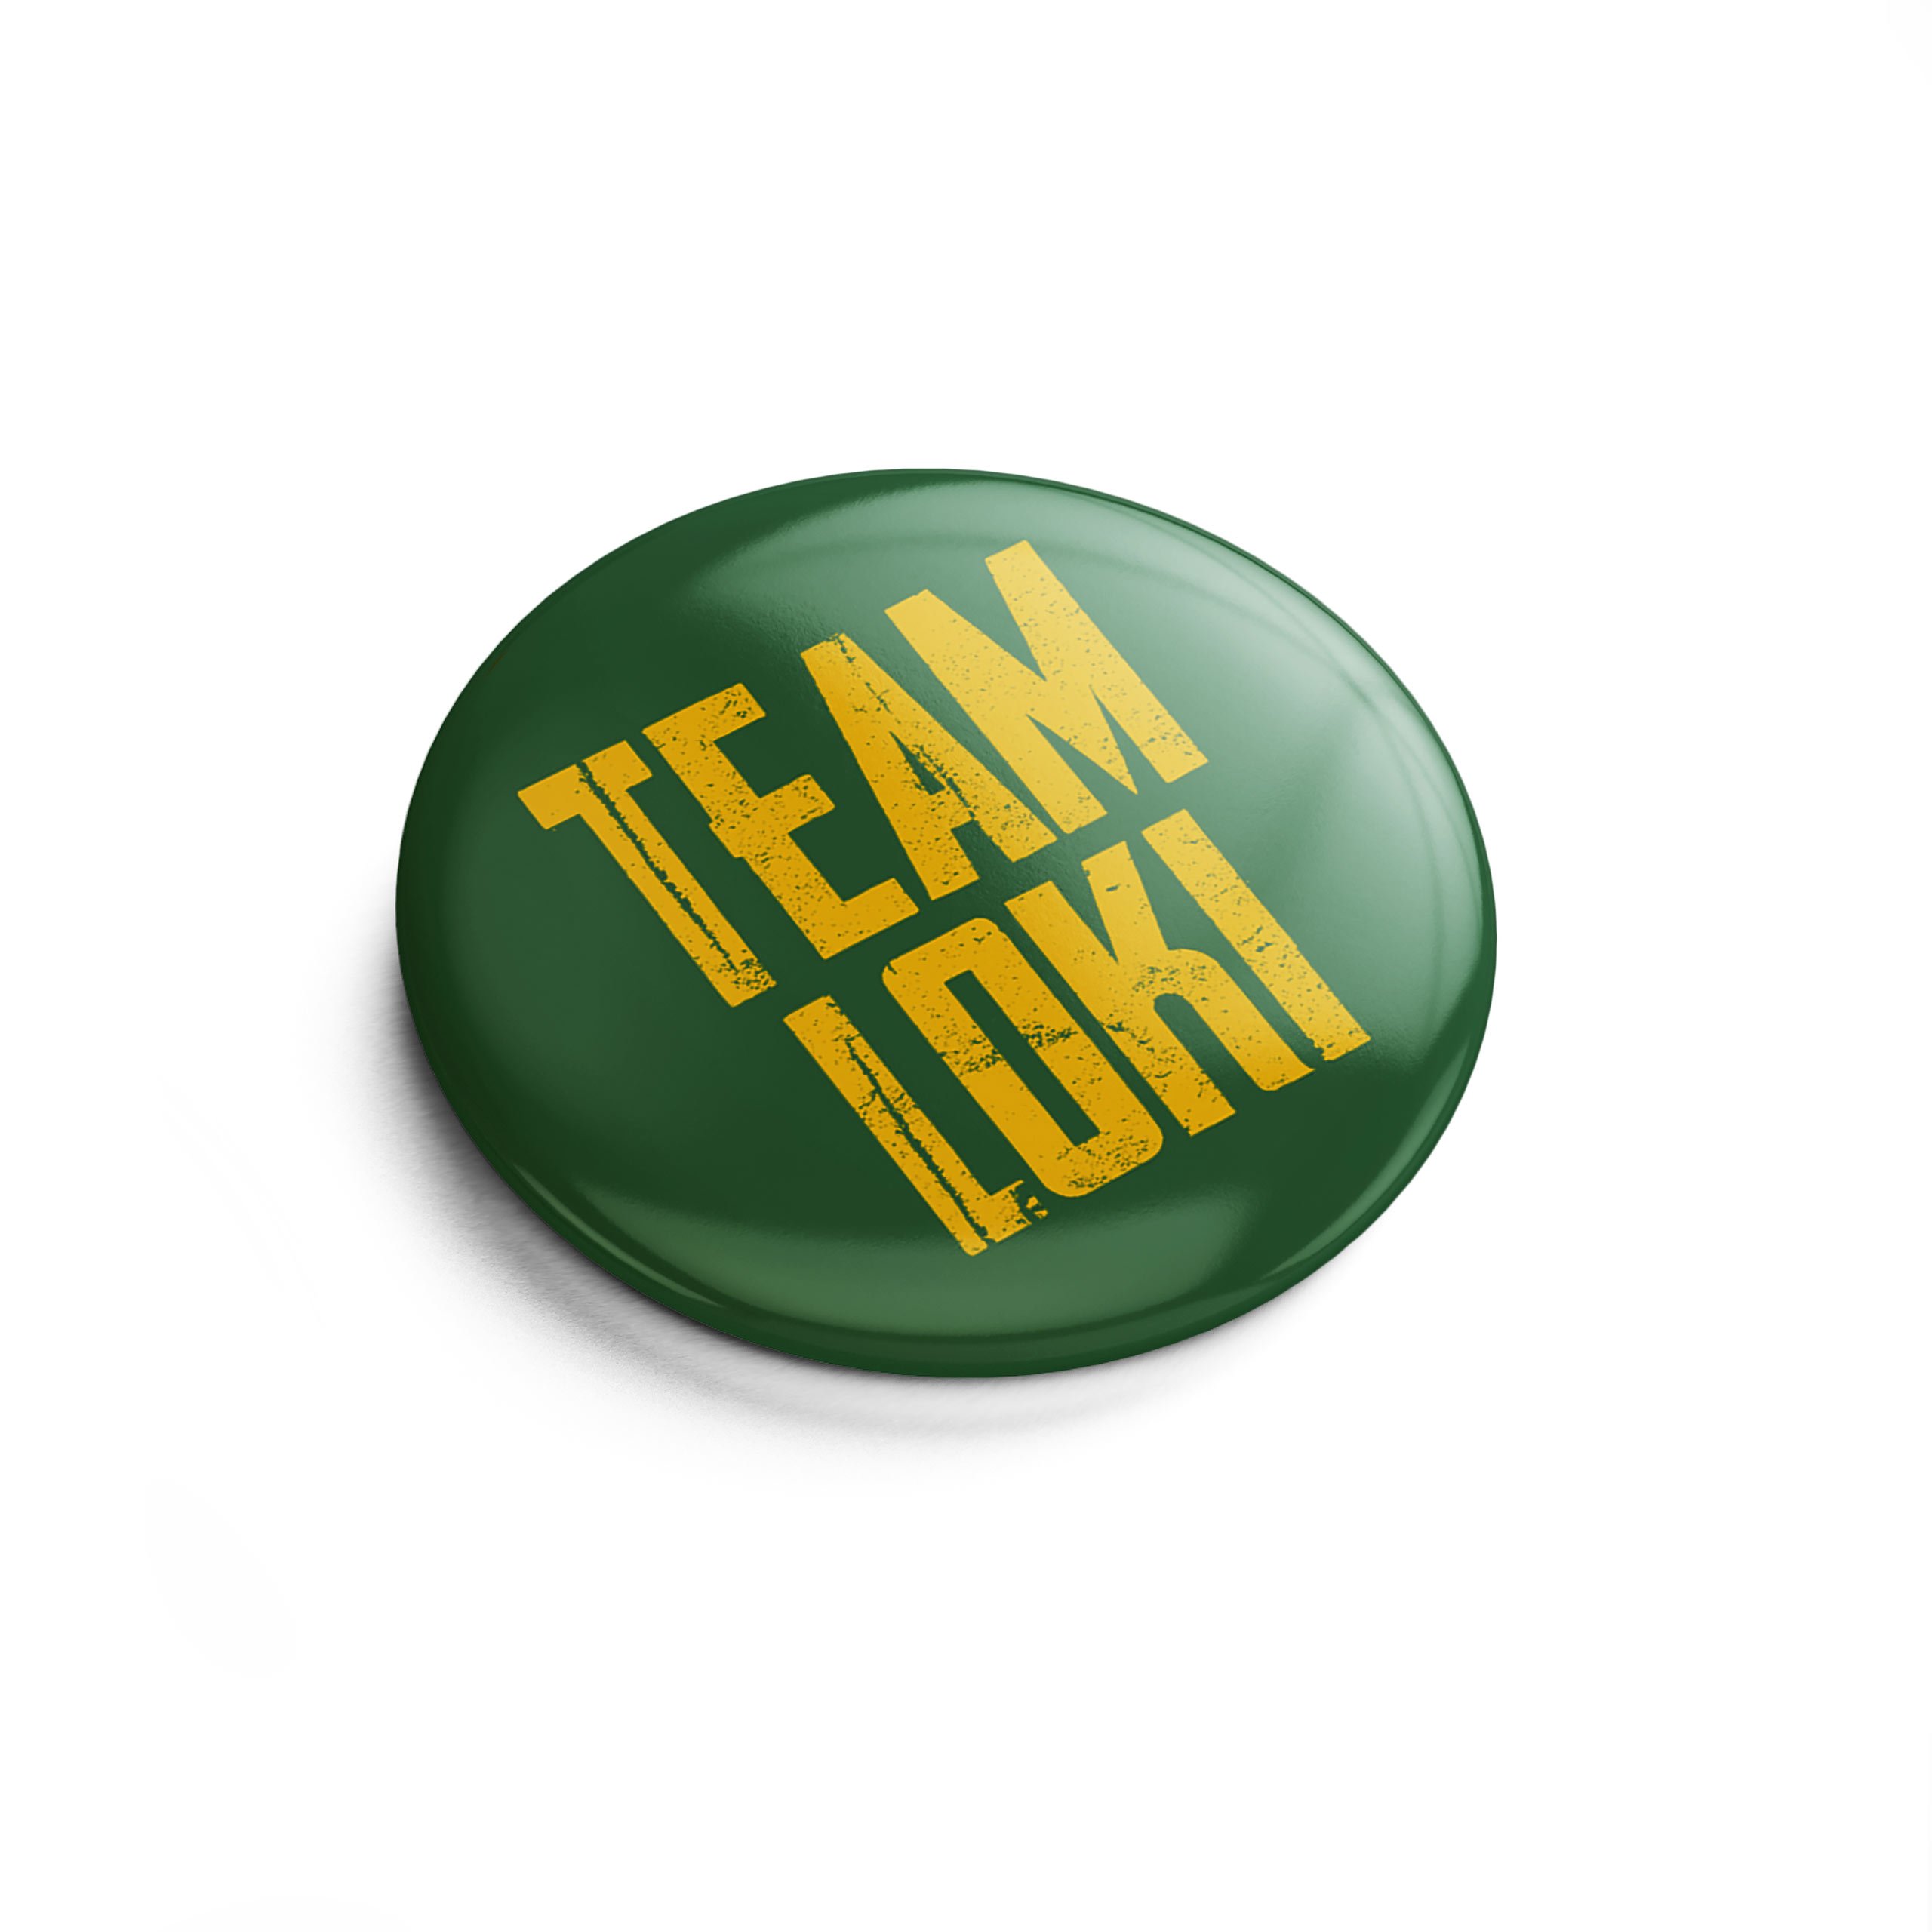 Team Button für Loki Fans